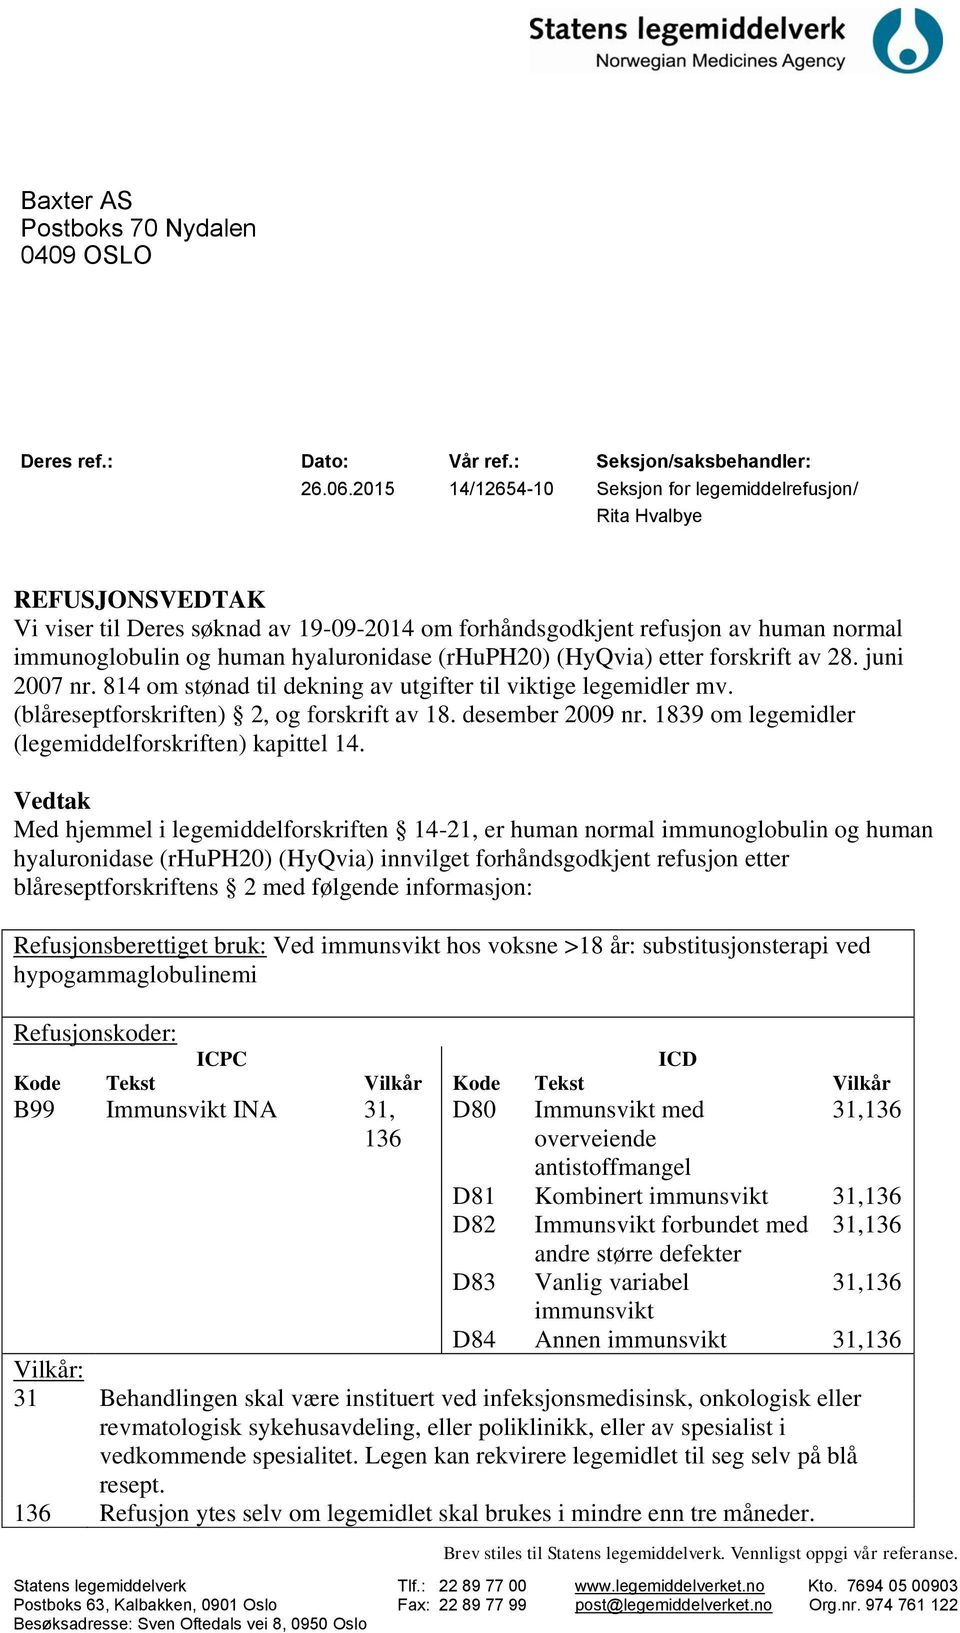 hyaluronidase (rhuph20) (HyQvia) etter forskrift av 28. juni 2007 nr. 814 om stønad til dekning av utgifter til viktige legemidler mv. (blåreseptforskriften) 2, og forskrift av 18. desember 2009 nr.